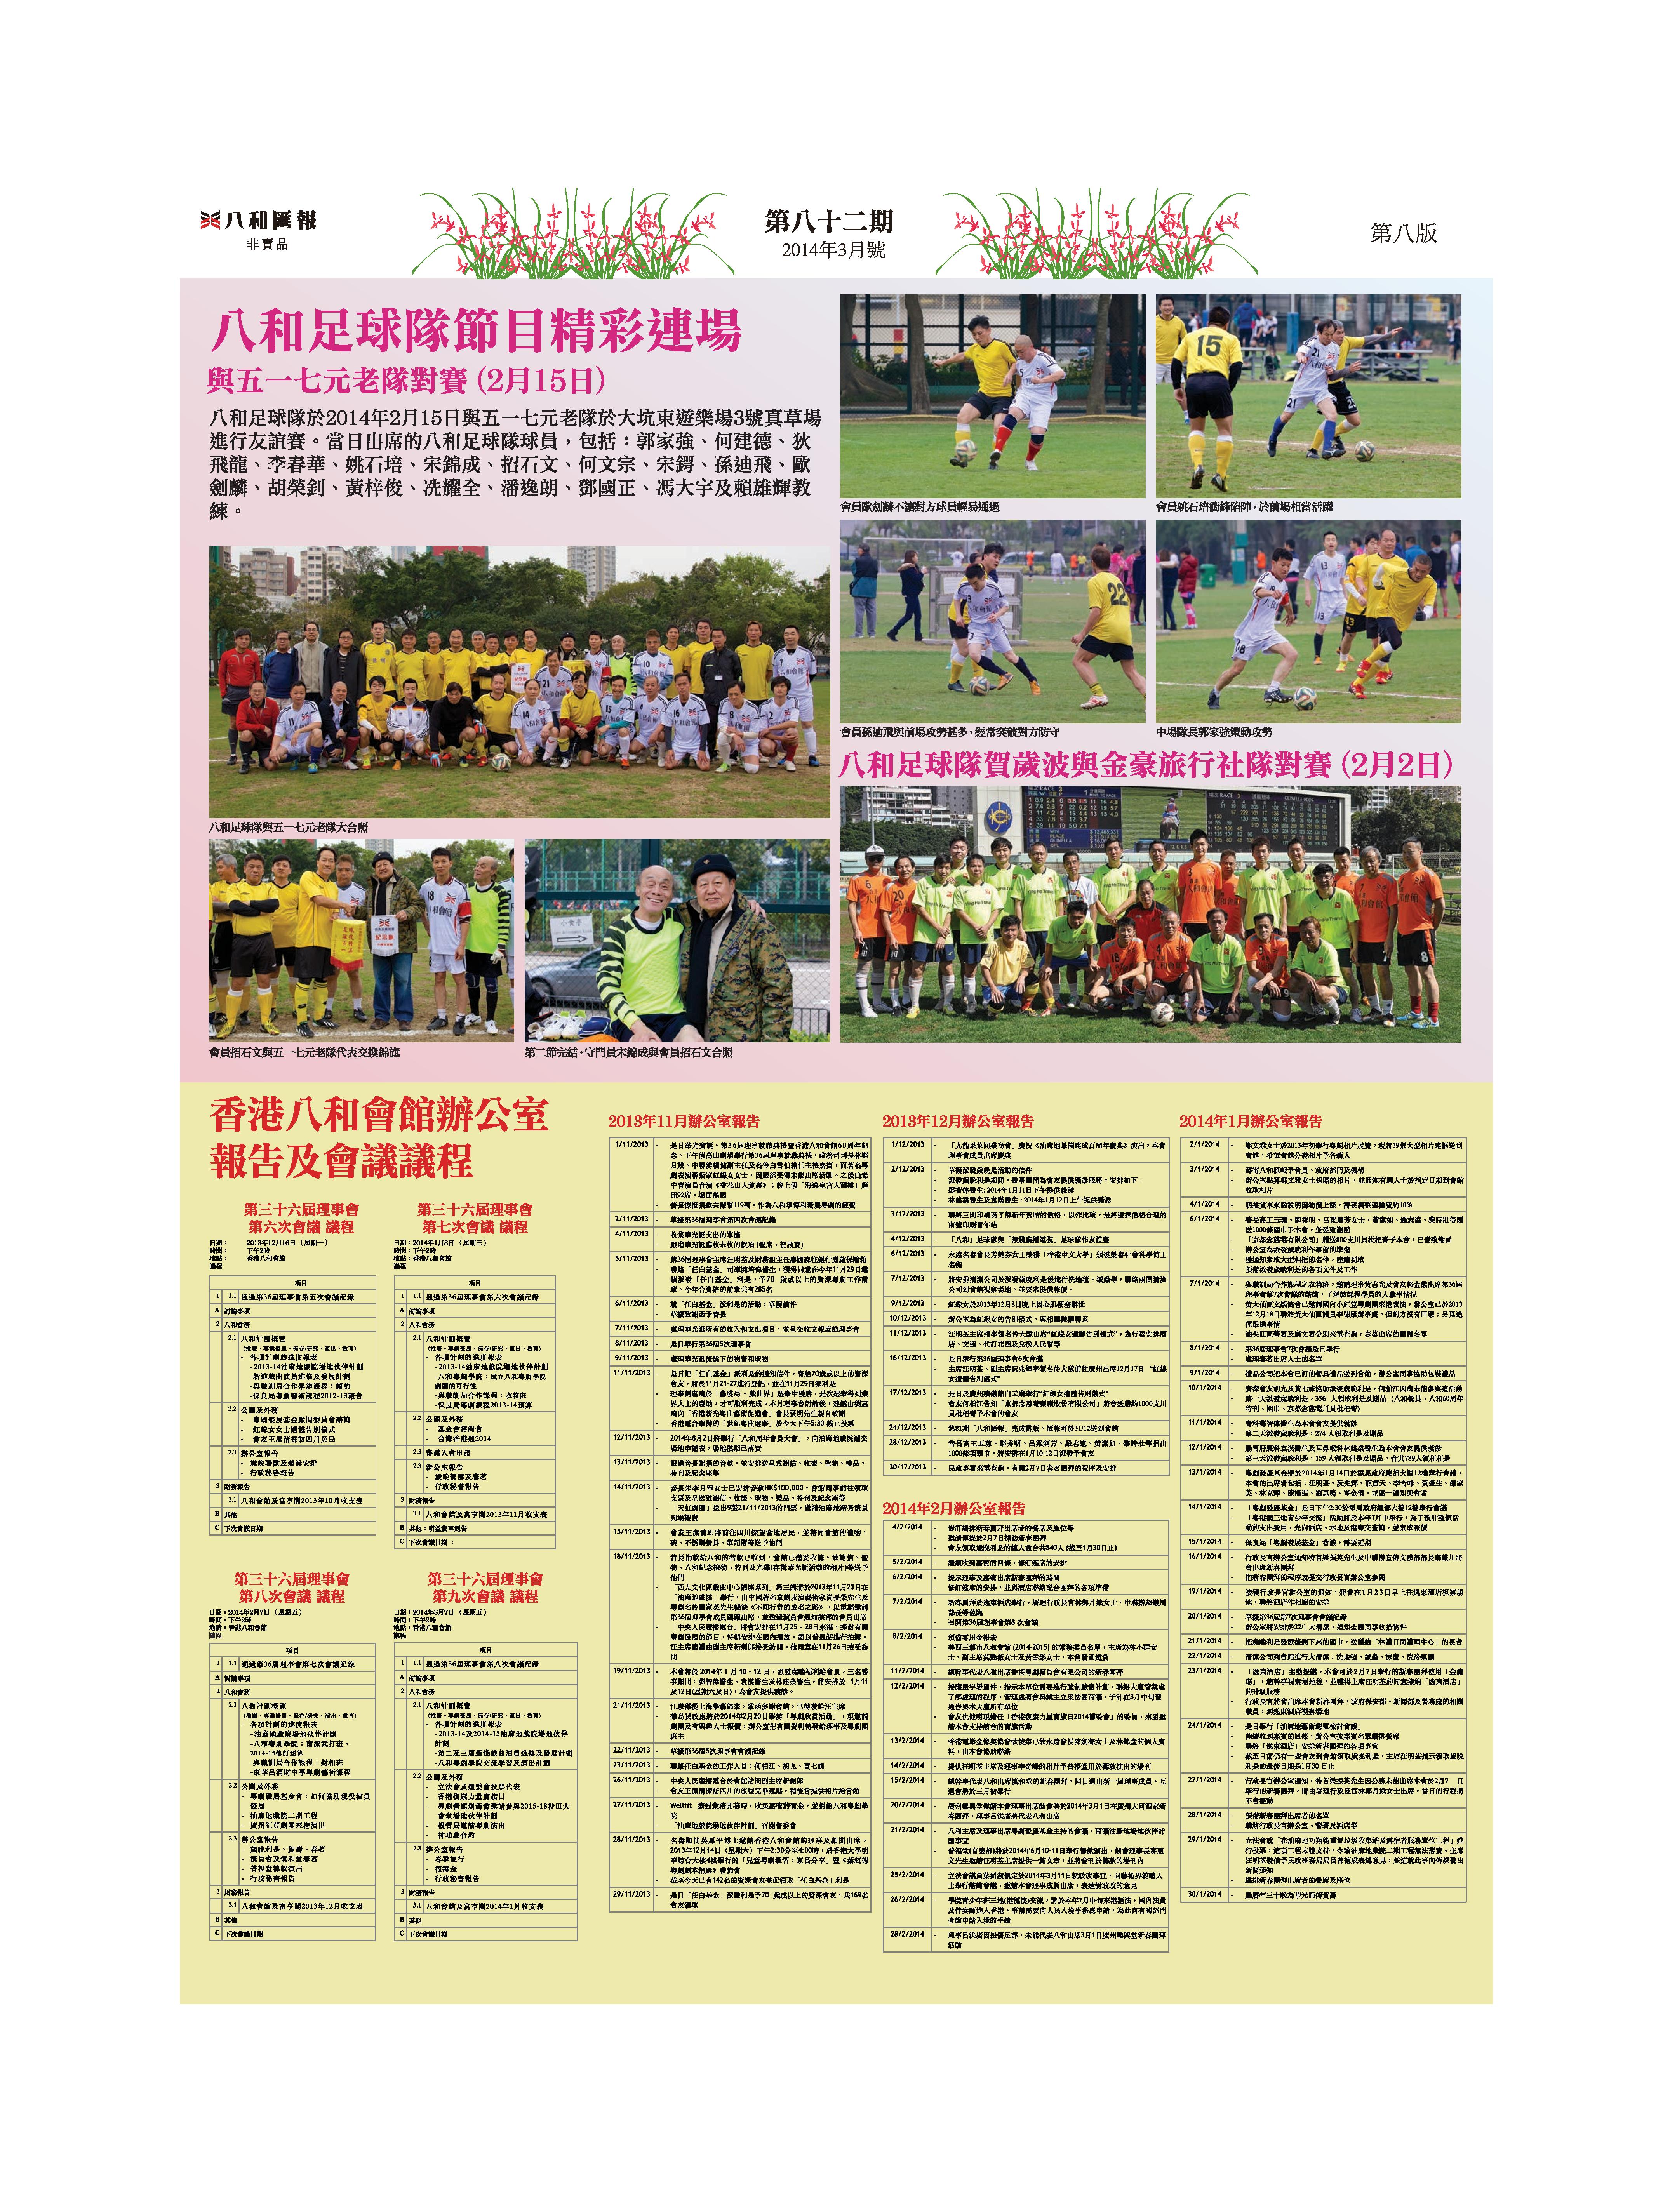 八和足球隊節目精彩連場 與五一七元老隊對賽 | 八和足球隊賀歲波與金豪旅行社隊對賽 | 香港八和會館辦公室報告（2013年11月至2014年2月）及第三十六屆理事會第六至九次會議議程 